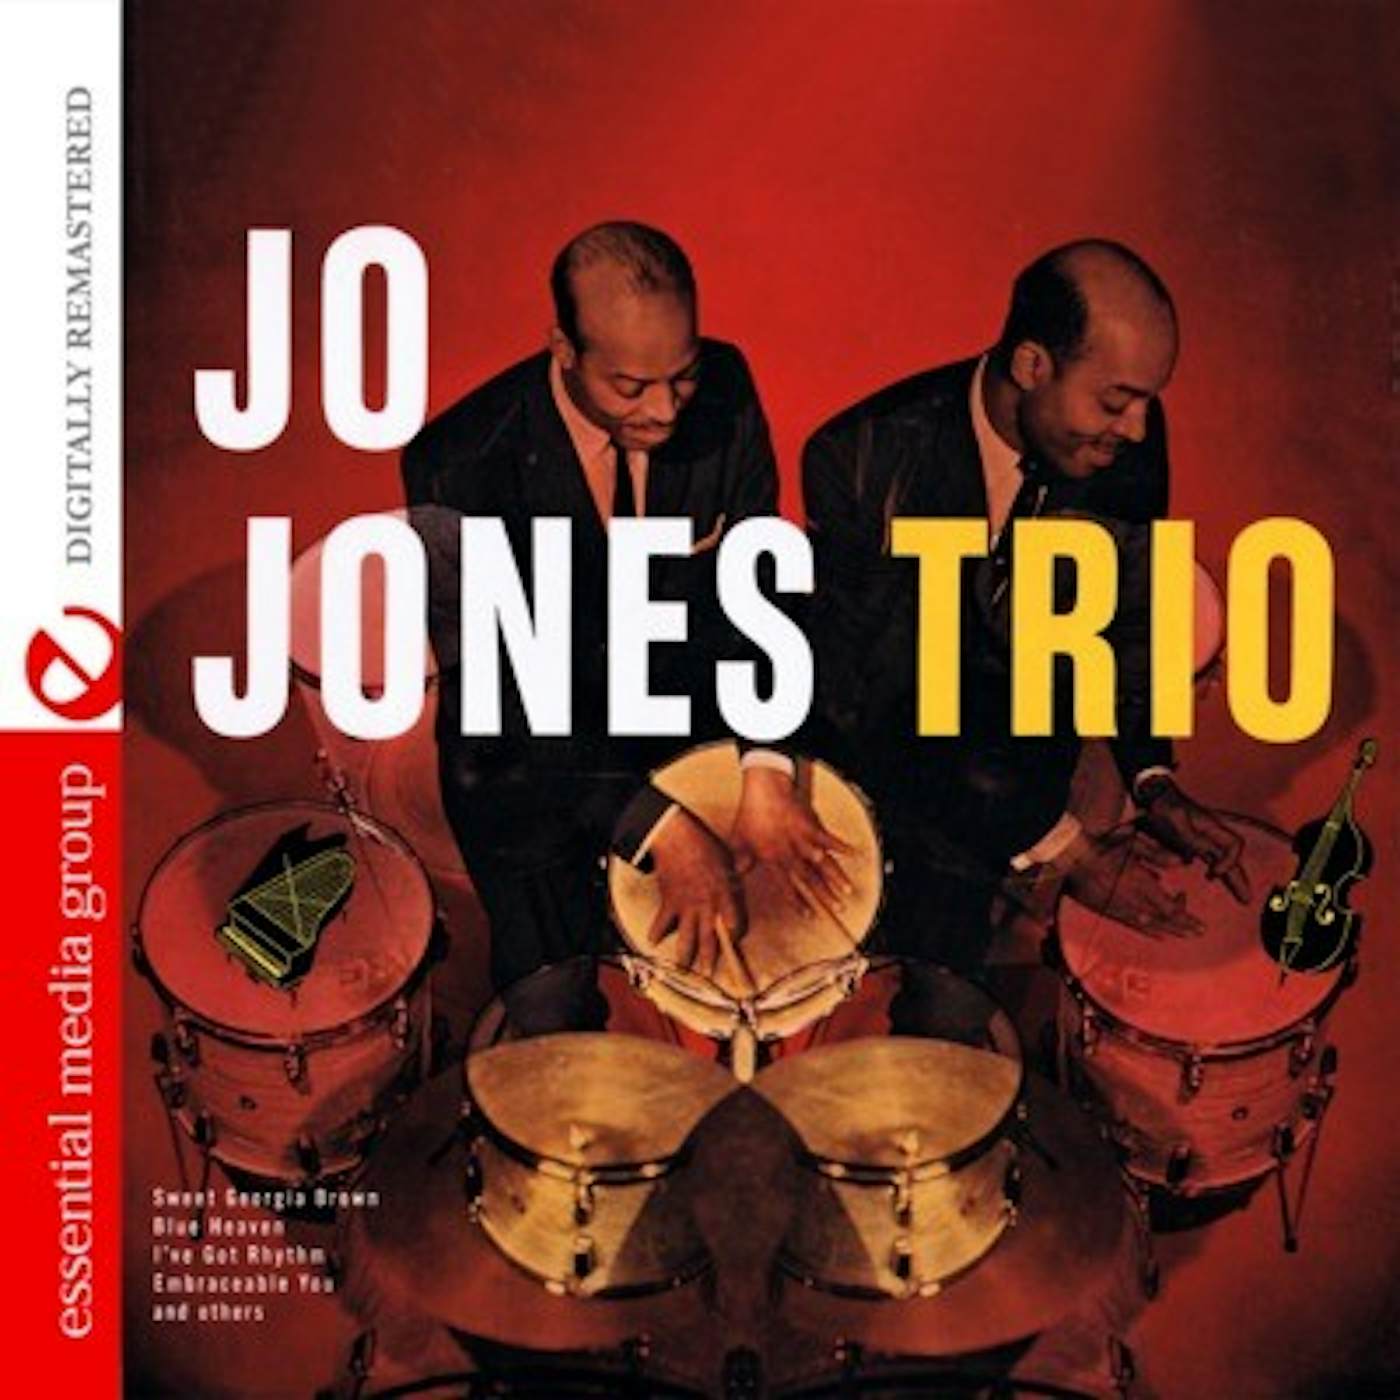 JO JONES TRIO CD